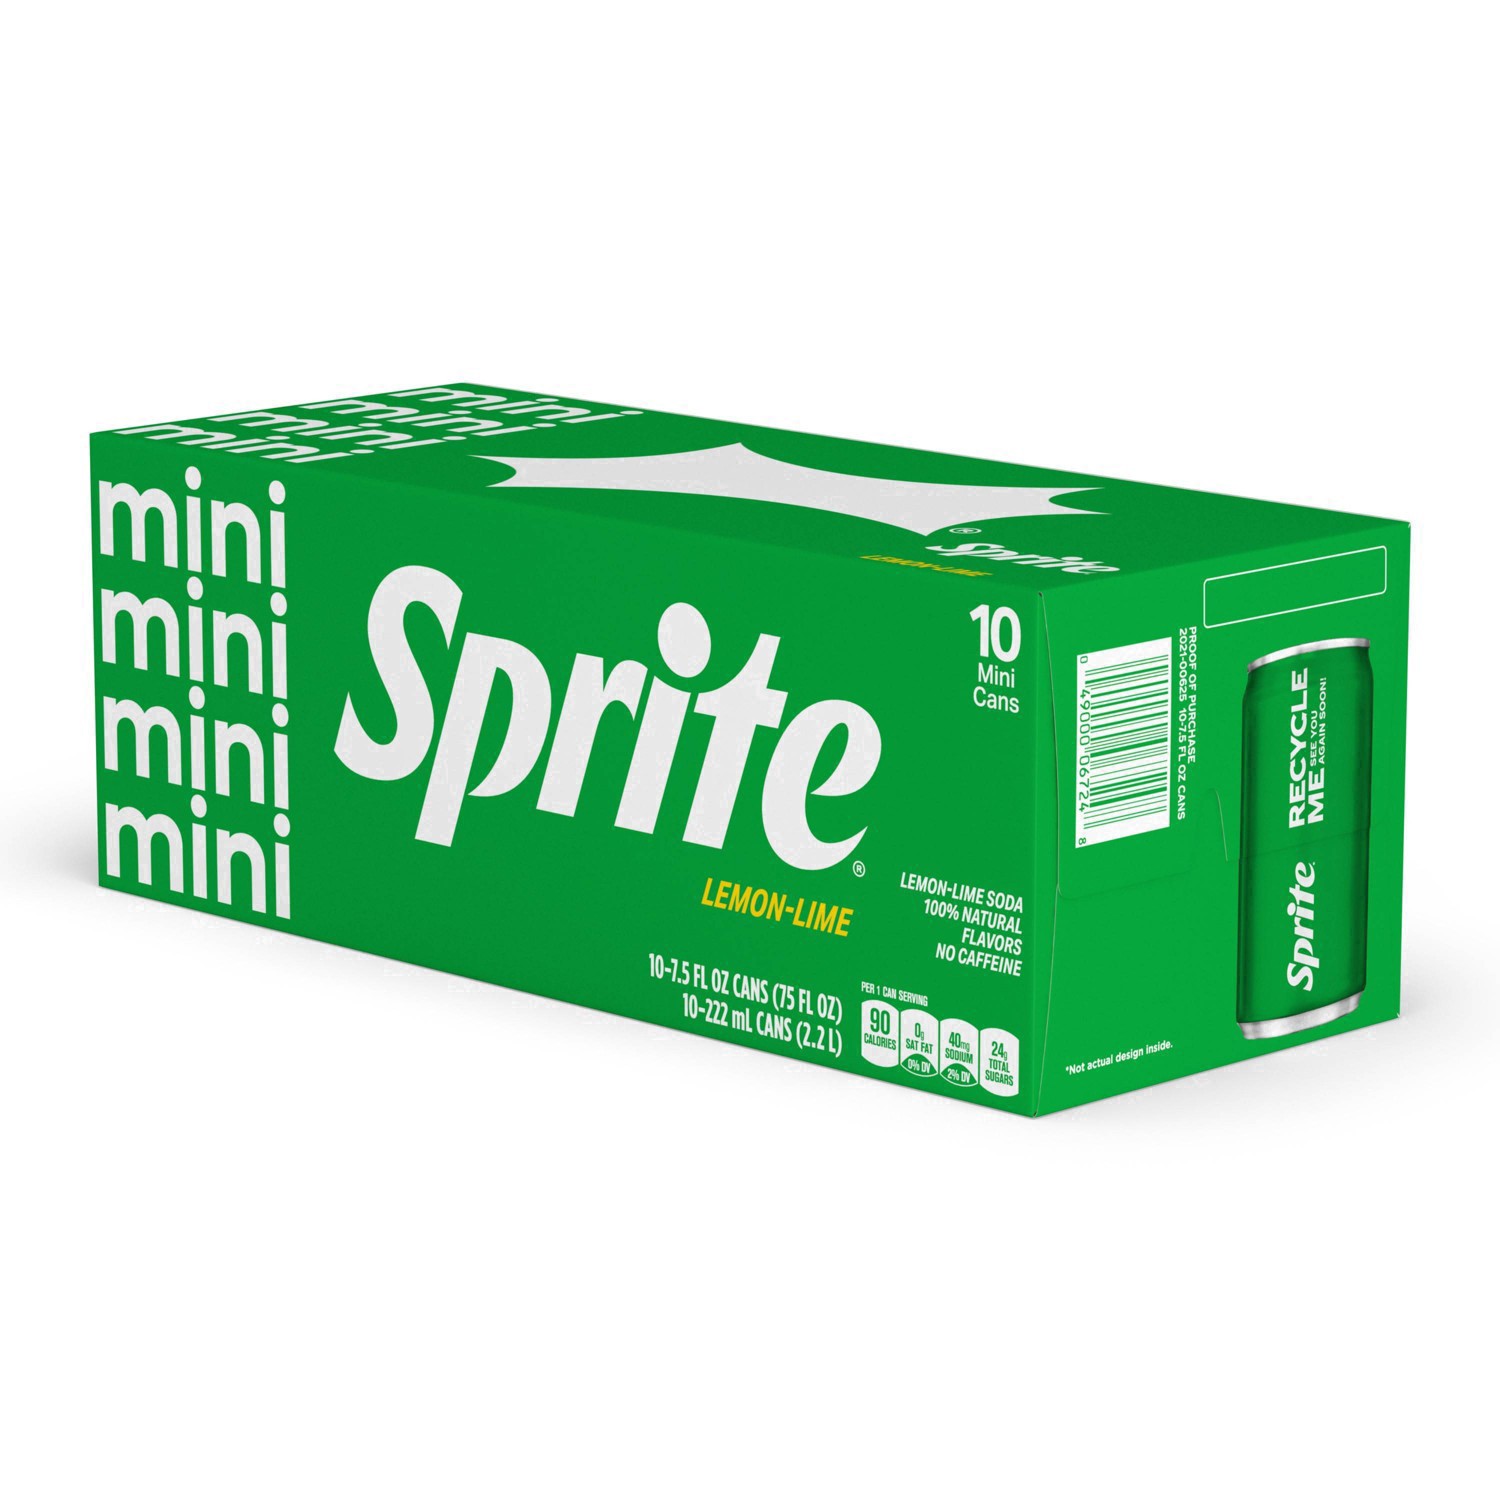 slide 65 of 91, Sprite Lemon Lime Soda Soft Drinks, 7.5 fl oz, 10 Pack, 